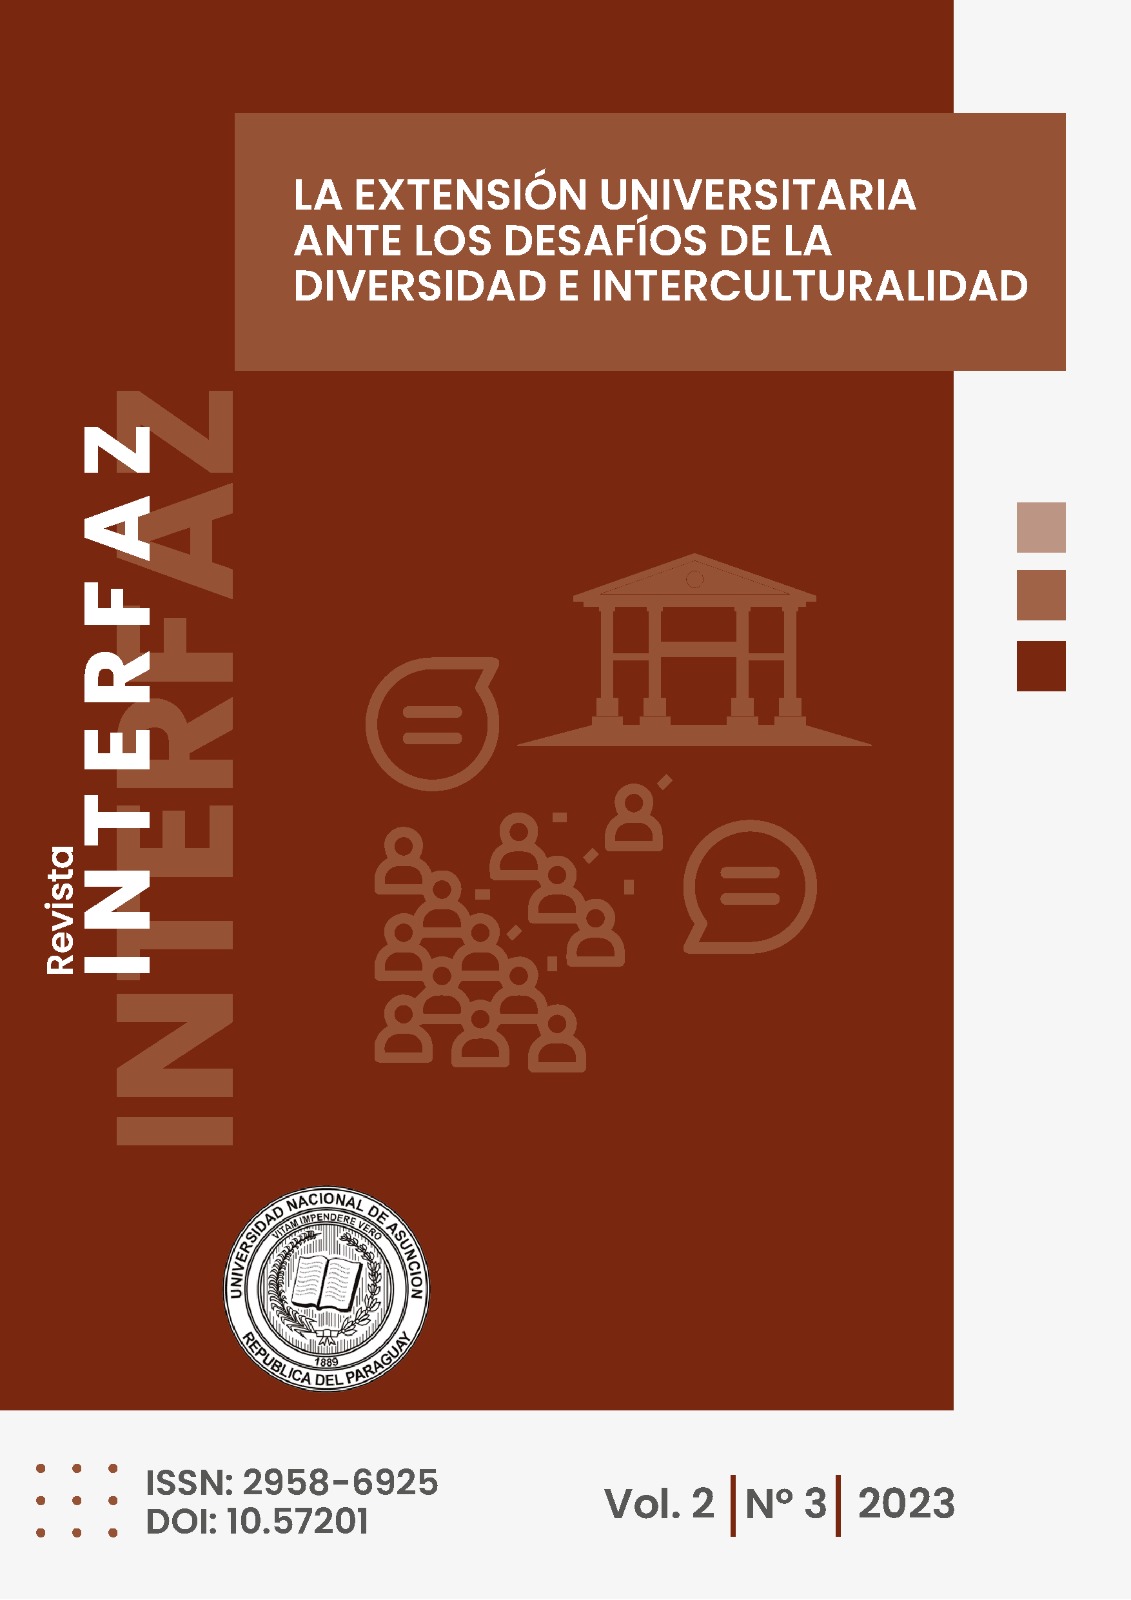 					Ver Vol. 2 Núm. 2 (2023):  “La extensión universitaria ante los desafíos de la diversidad e interculturalidad”
				